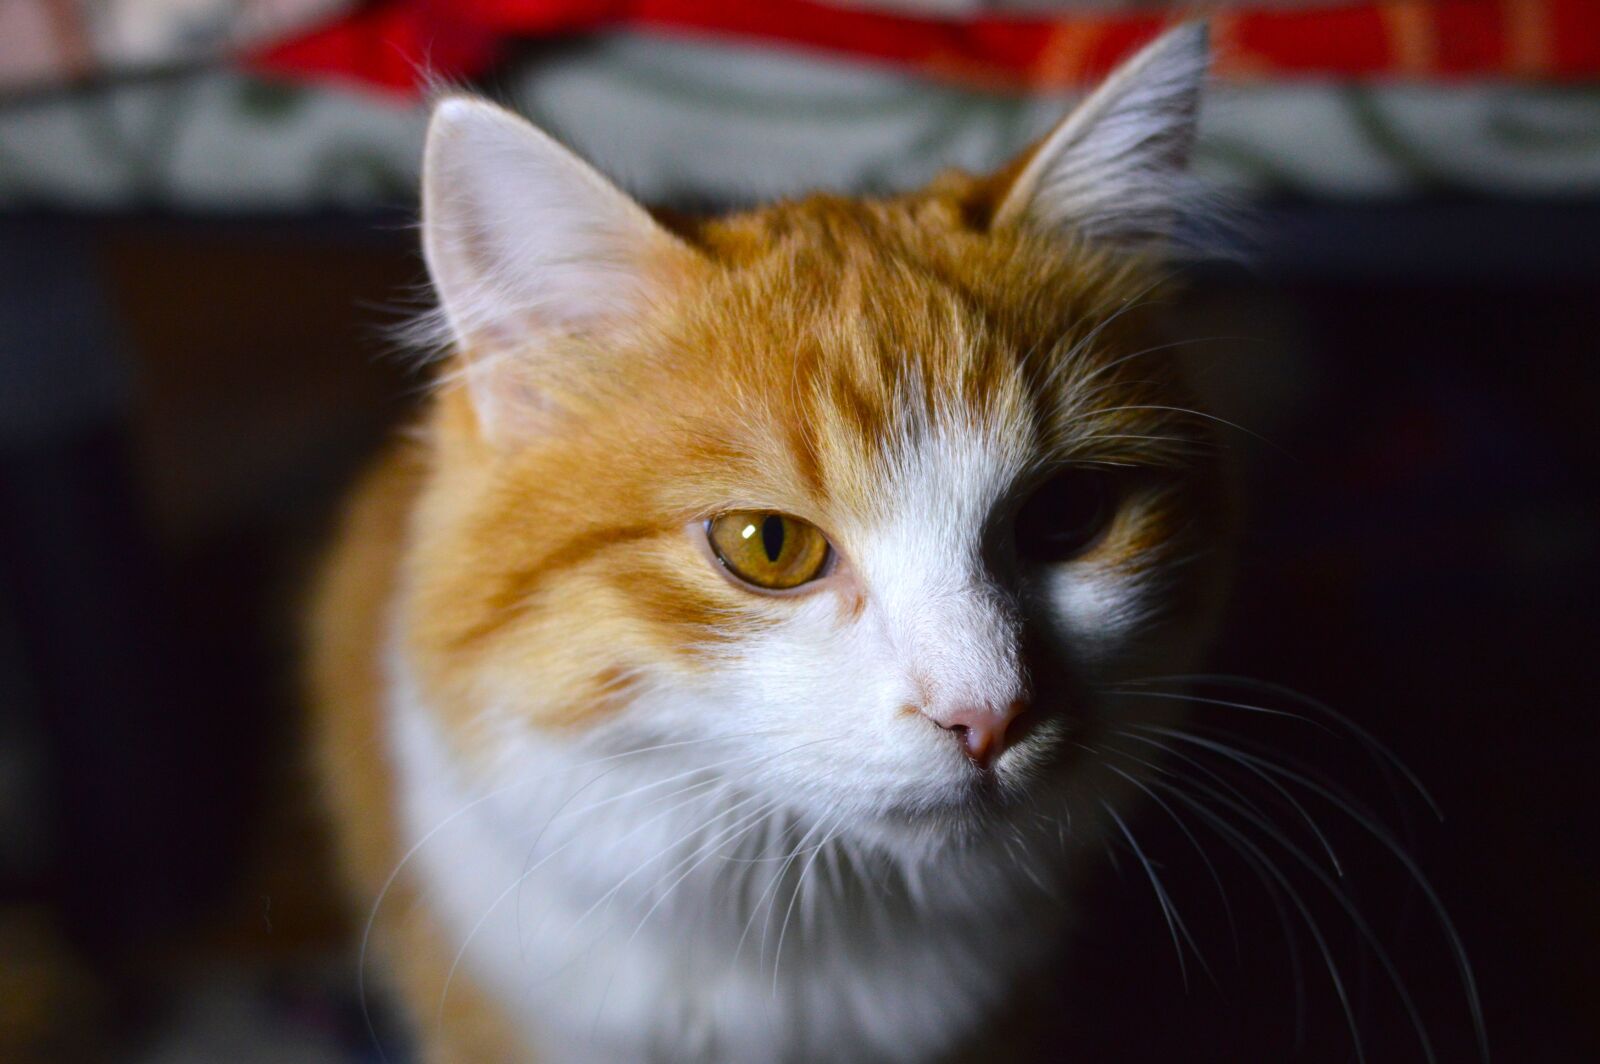 Nikon D3200 sample photo. Portrait, pet portrait, cat photography